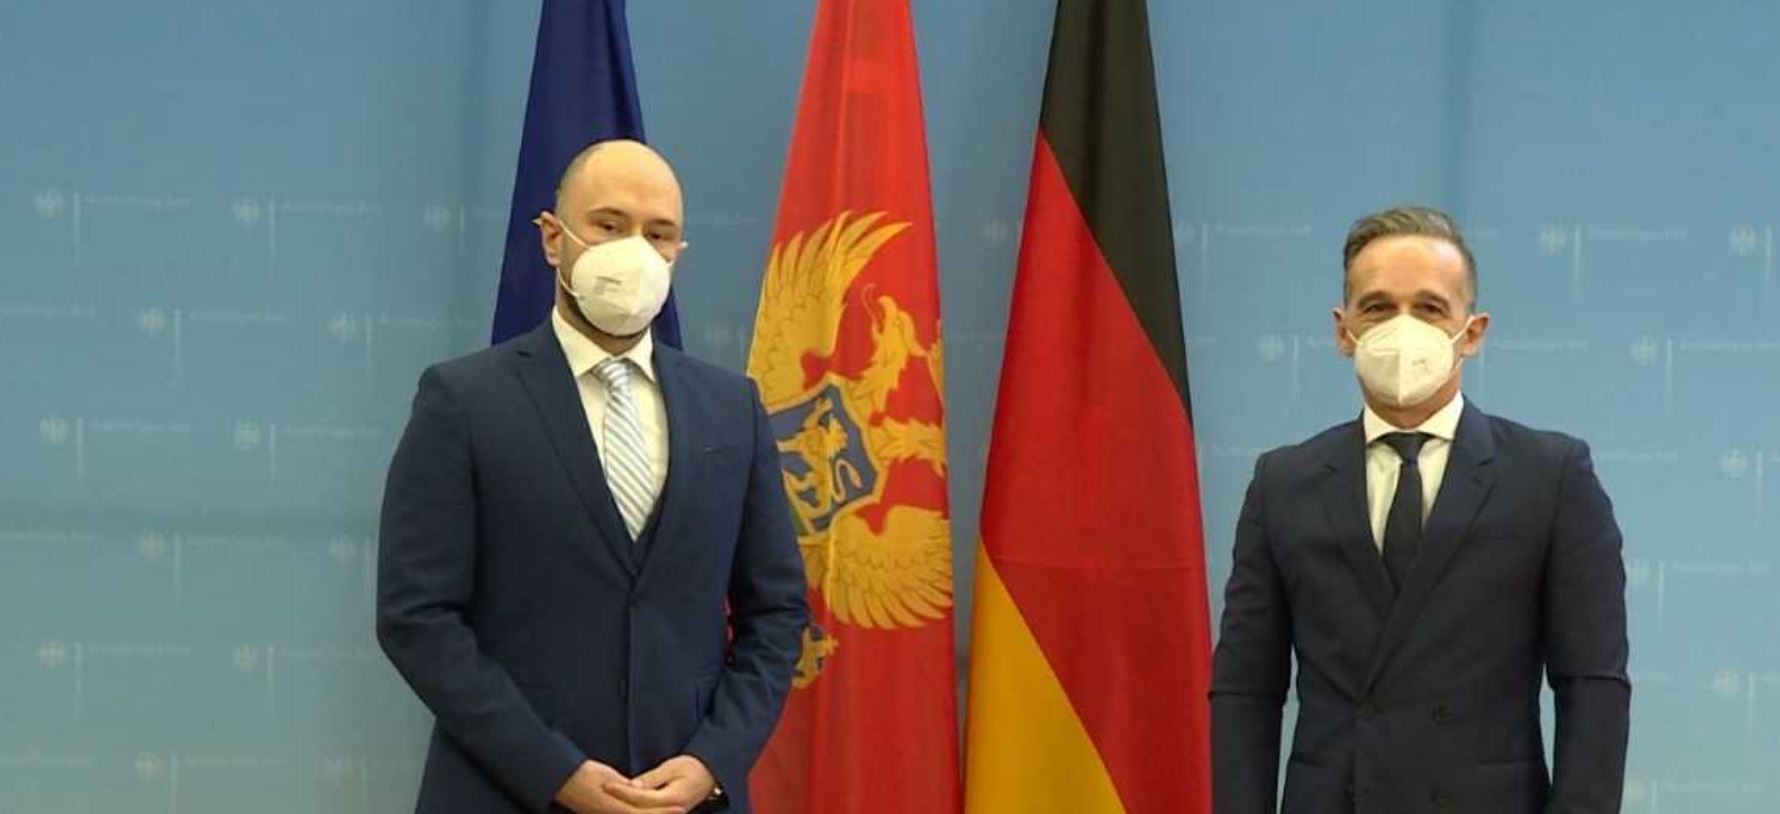 Radulović – Mas: Crna Gora i Njemačka prijatelji i bliski saveznici